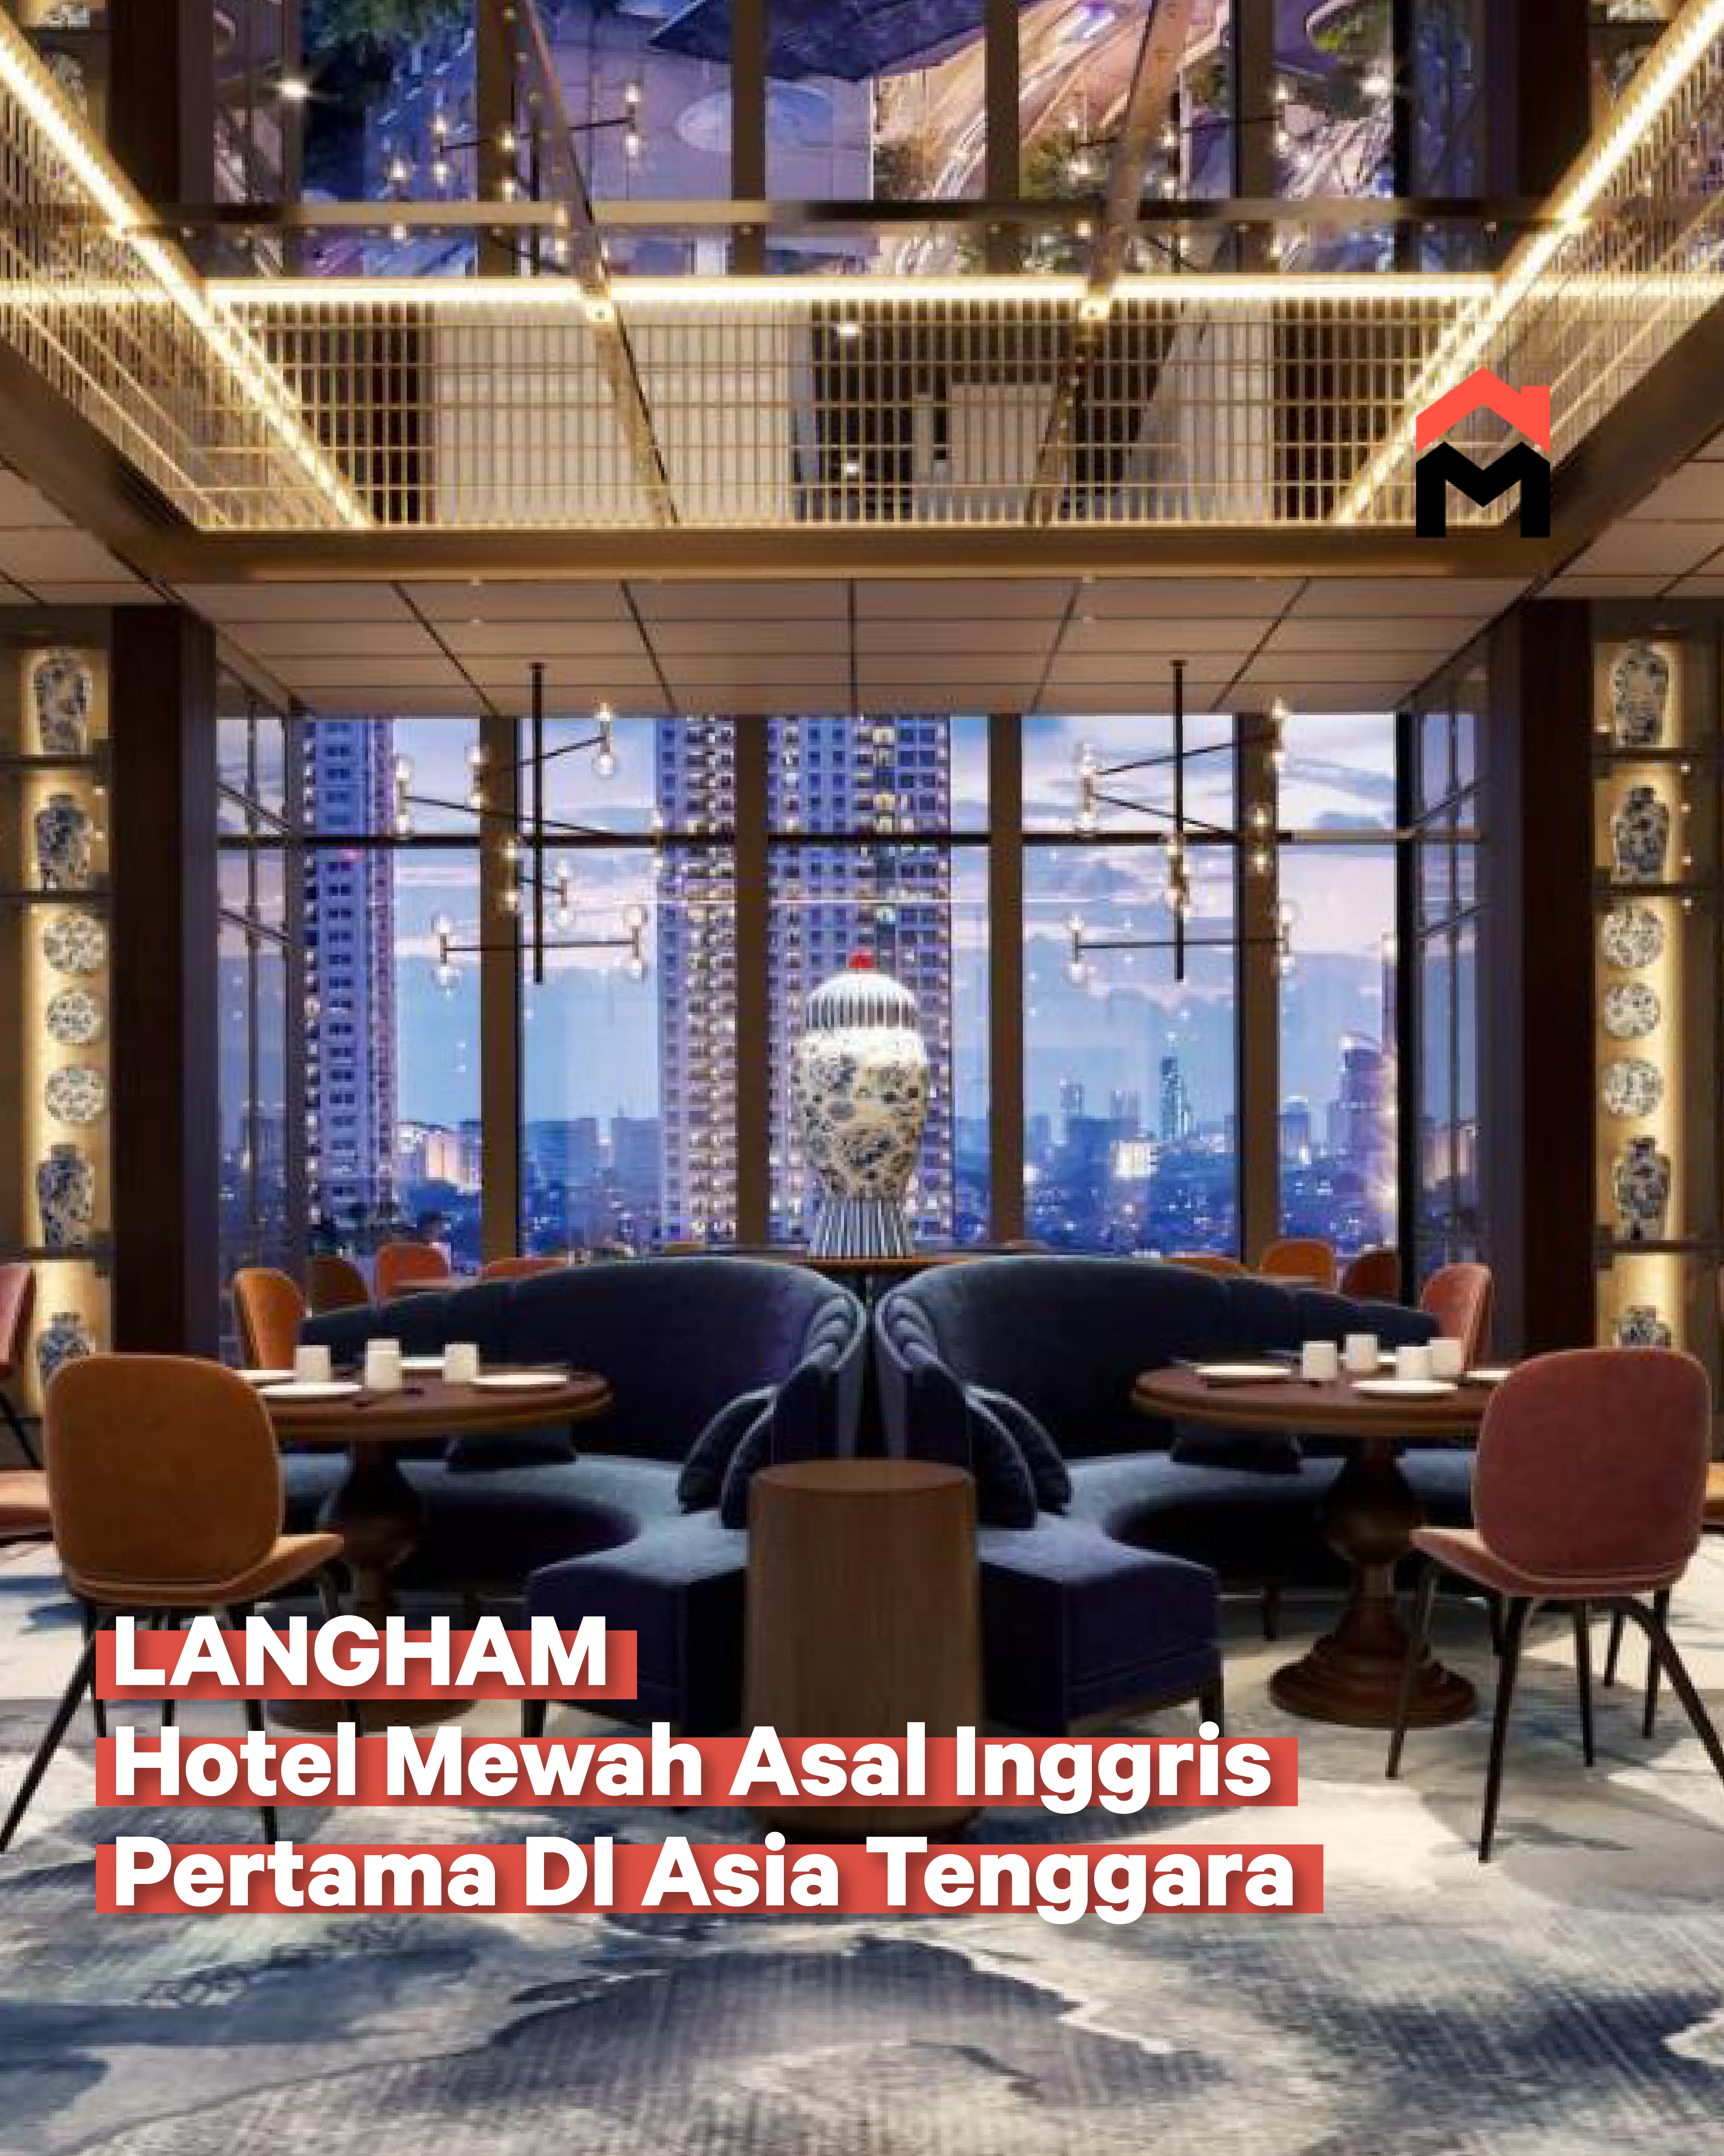 Langham - Hotel Mewah Asal Inggris Pertama di Asia Tenggara image